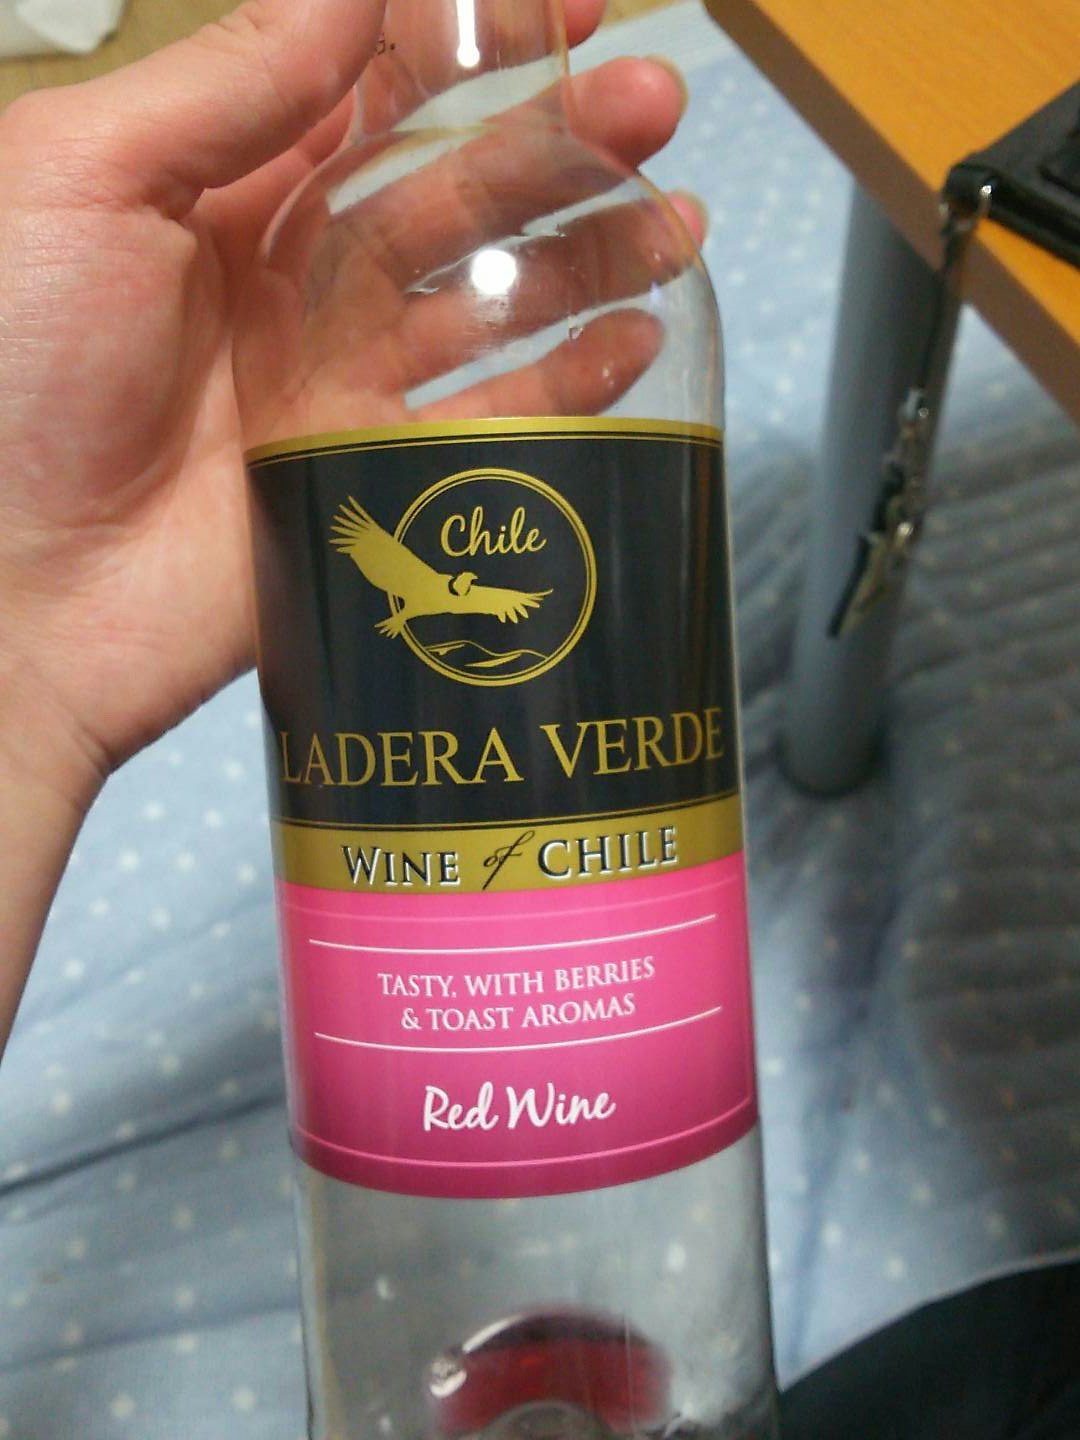 てっか Ladera Verde ラデラ ヴェルデ レッド チリ ベリー系の果実やスパイスの豊かな香りと穏やかなタンニンを楽しめる やさしいワインらしい 渋め 飲みやすい 安いからありがたい ペットボトル容器だけど ちゃんとしてる気がする